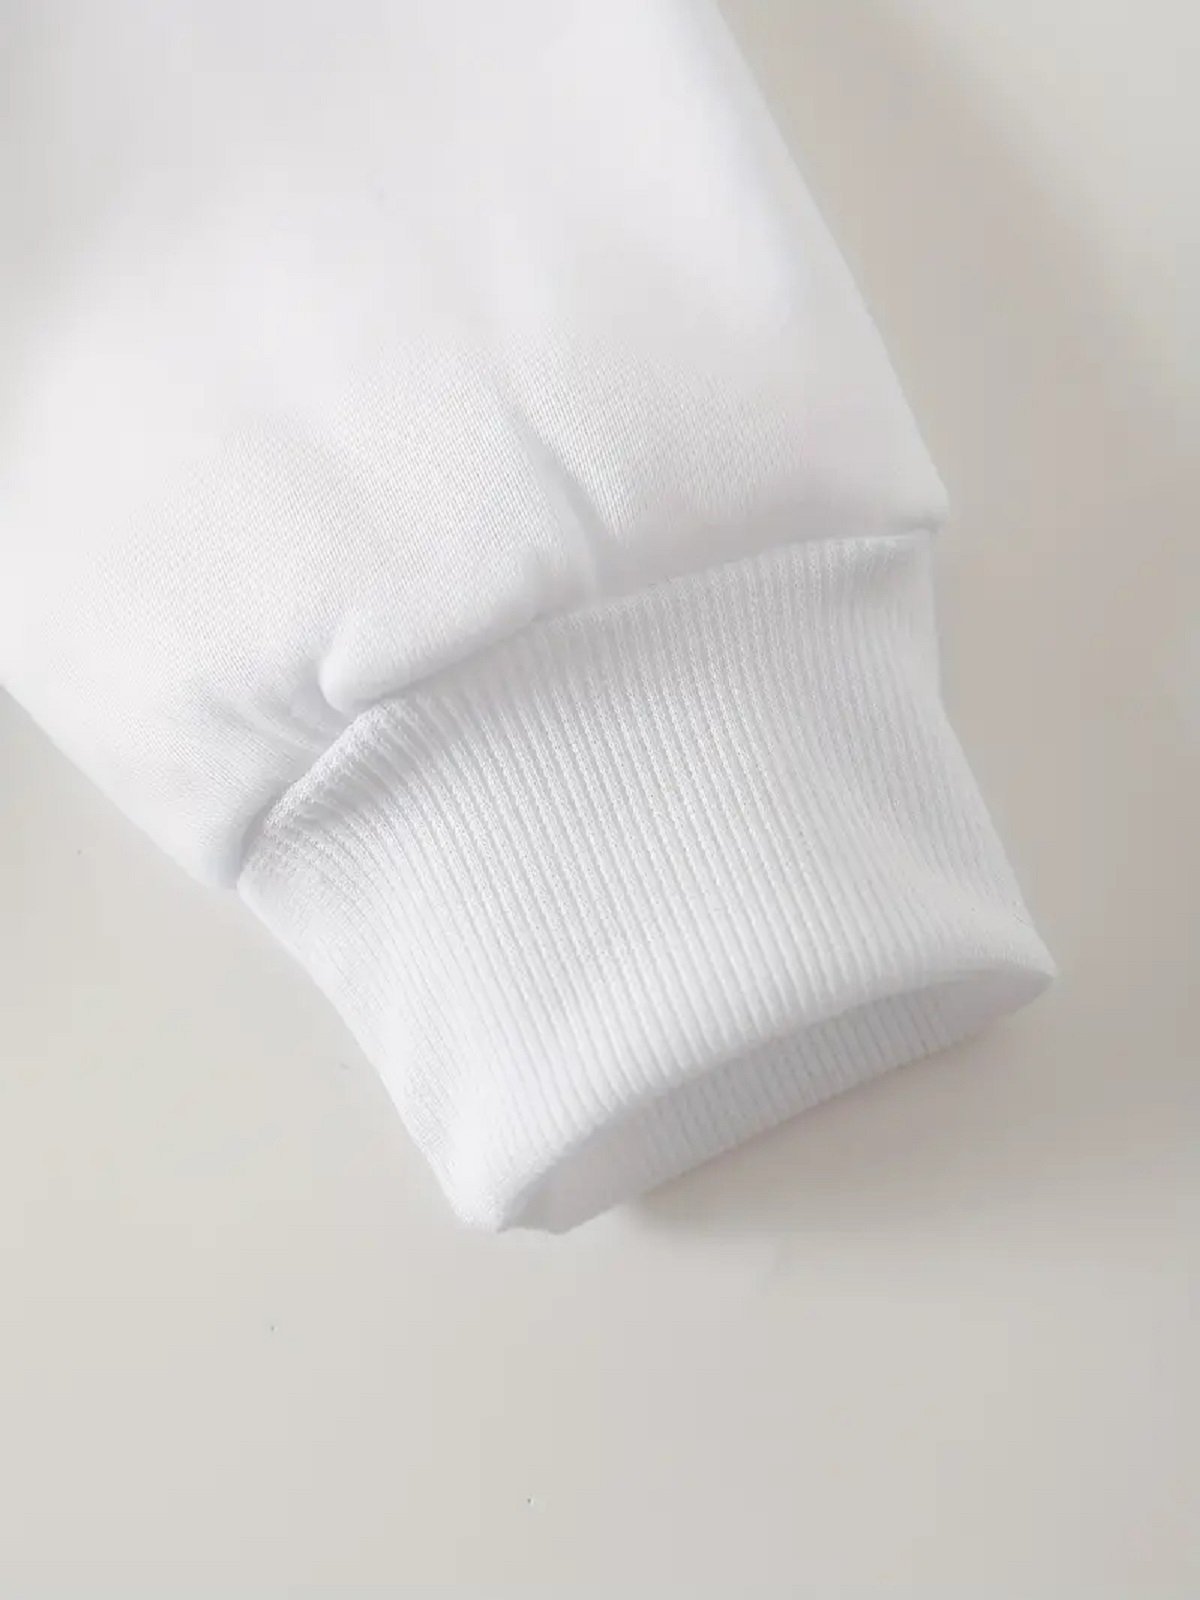 Sweat-shirts Femmes Décontracté Abstrait Printemps / Automne Polyester Quotidien Ample Régulier Droit Régulier